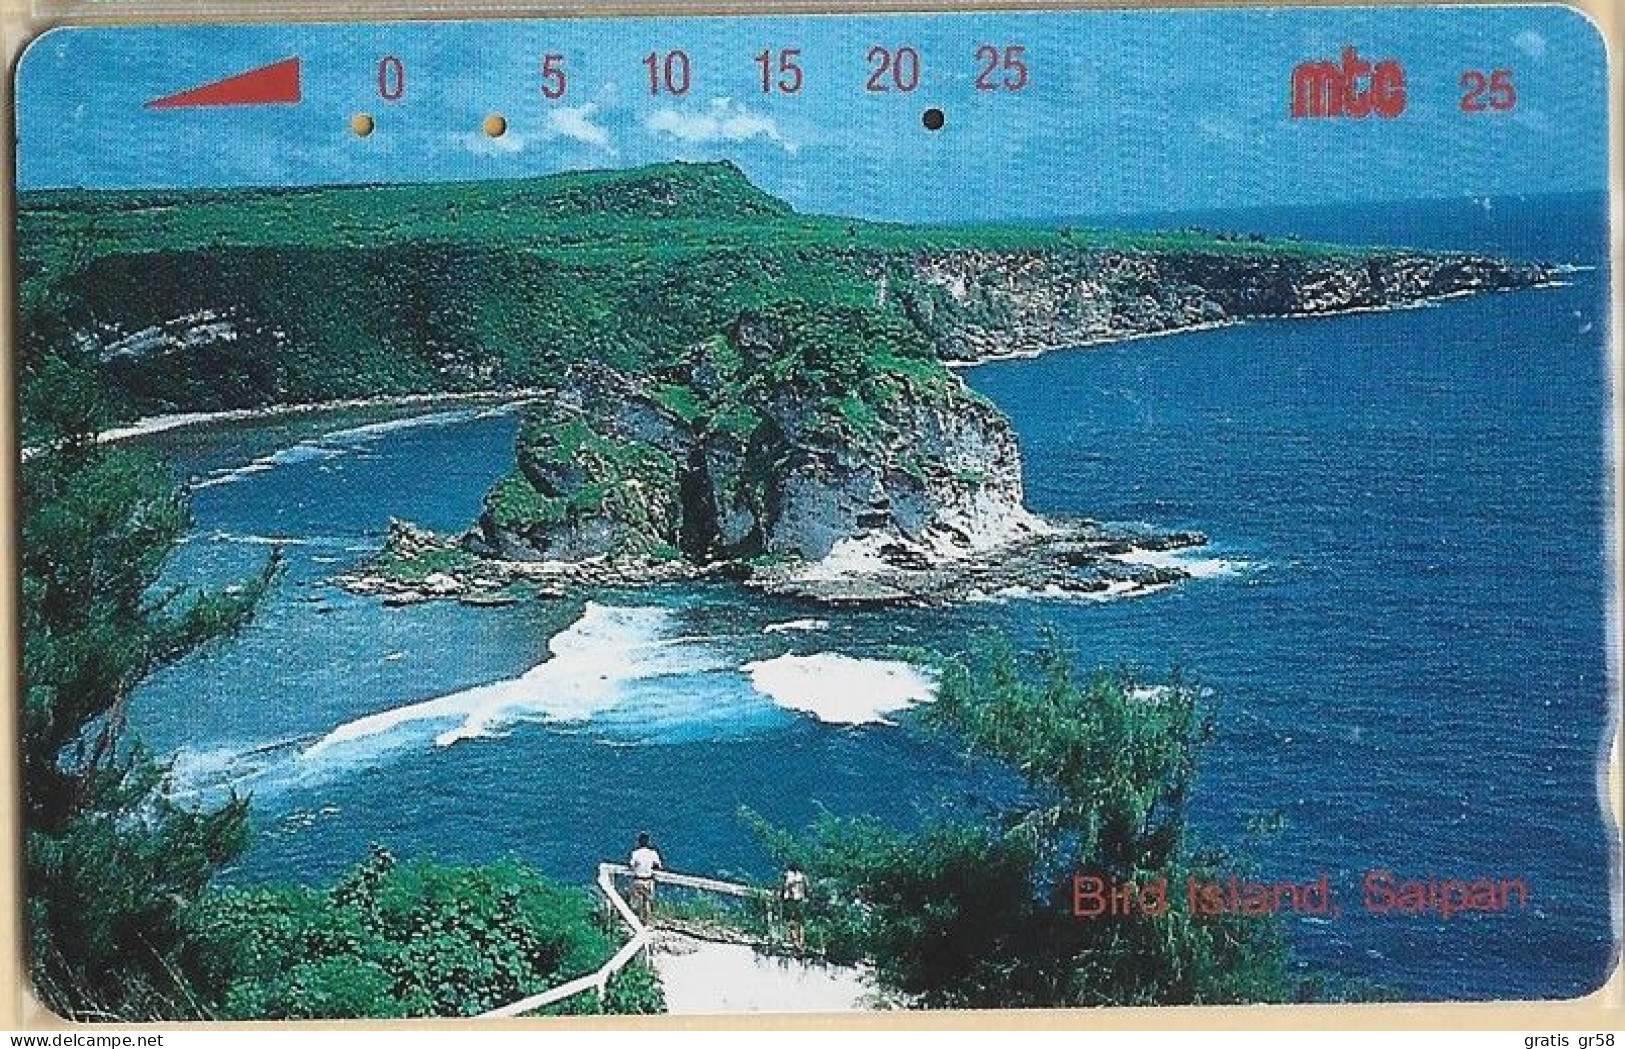 Northern Mariana Islands - NMN-MM-11, Bird Island, Saipan, Coastal Areas, 25U, 15,000ex, 1993, Used - Noordelijke Marianen